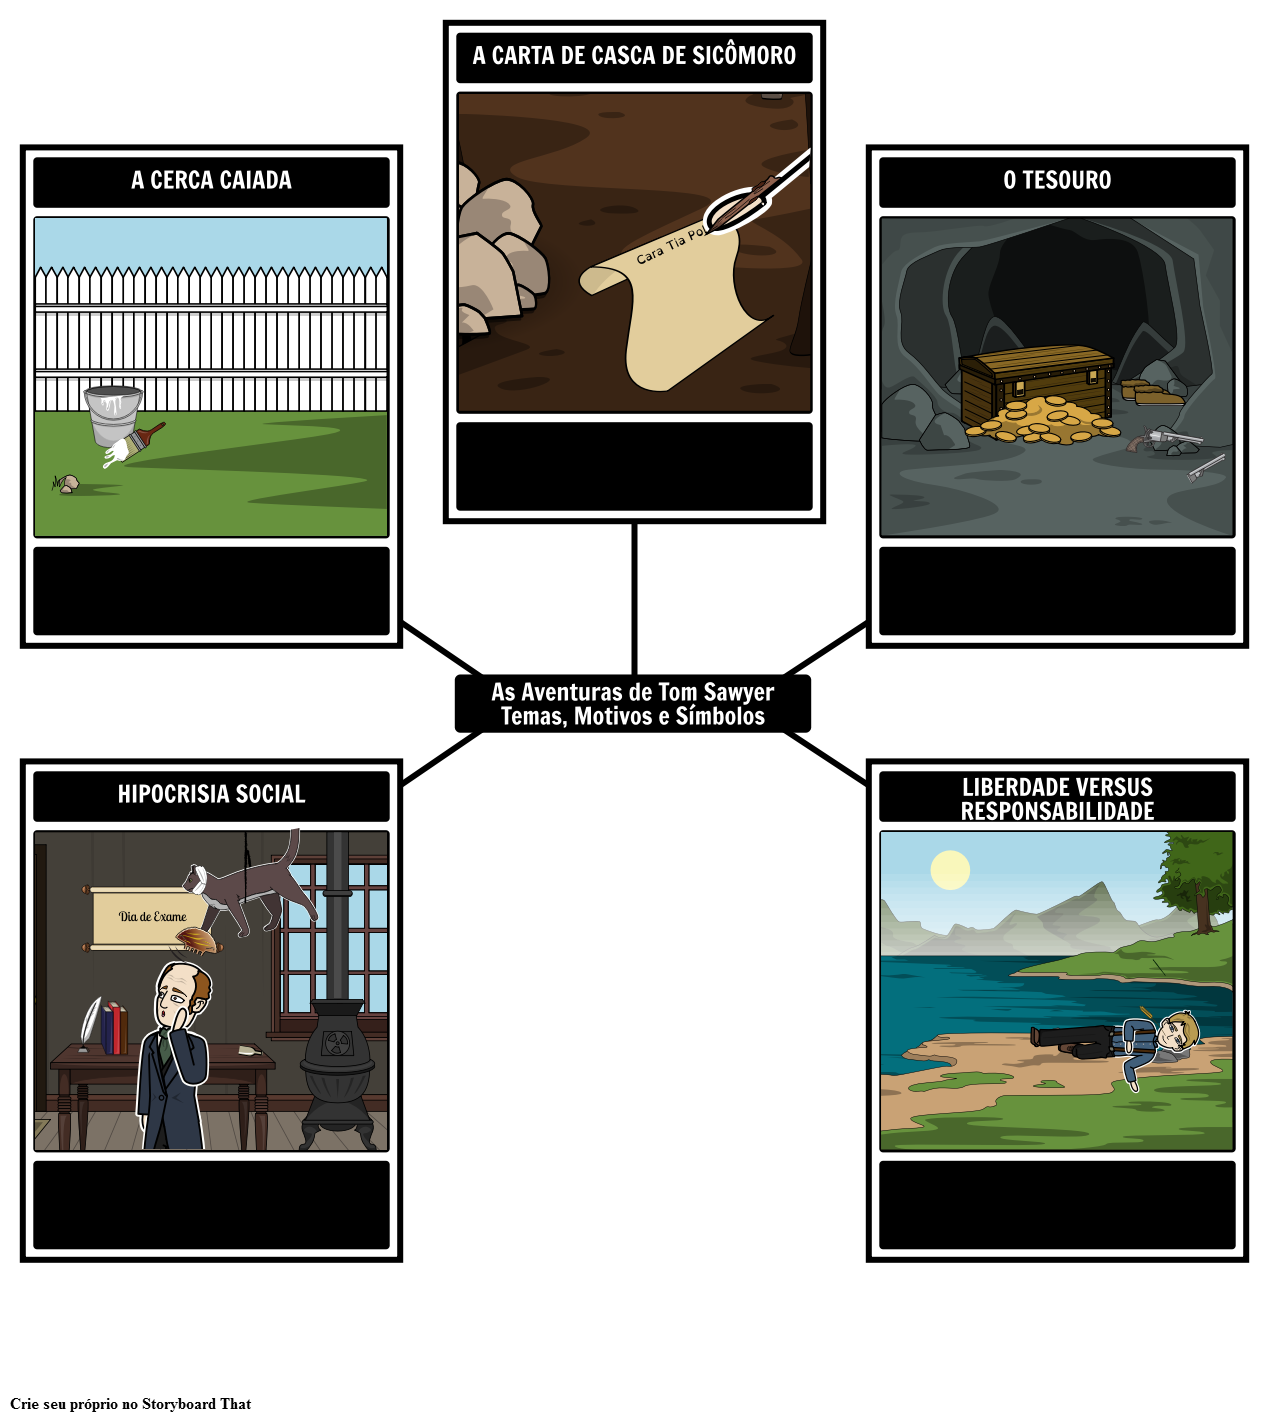 As Aventuras de Tom Sawyer Temas, Motivos e Símbolos